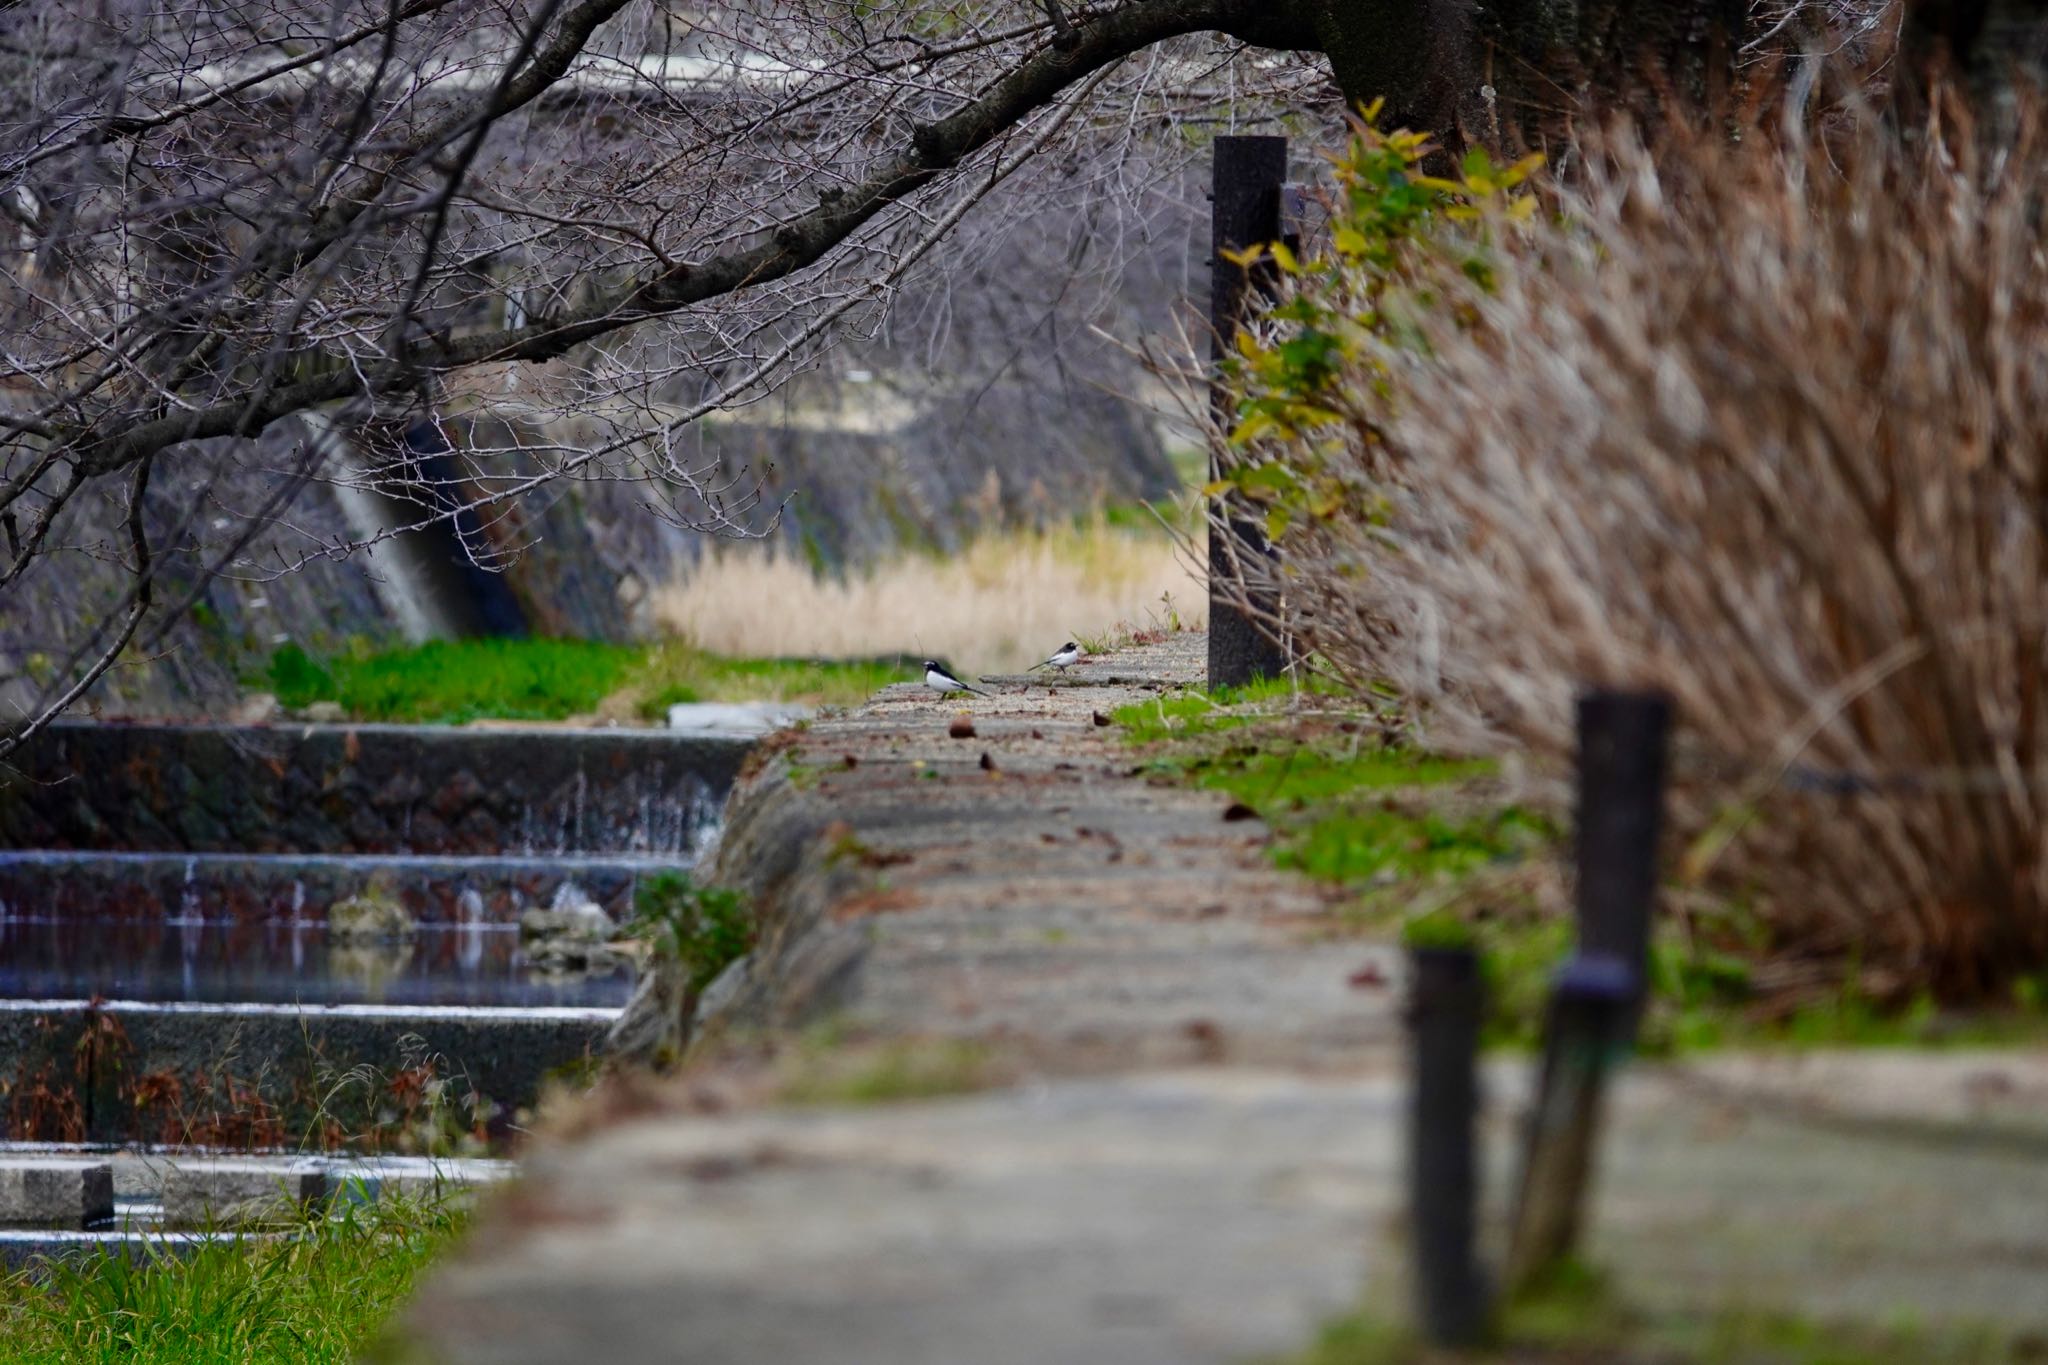 夙川河川敷緑地(夙川公園) セグロセキレイの写真 by speedgame